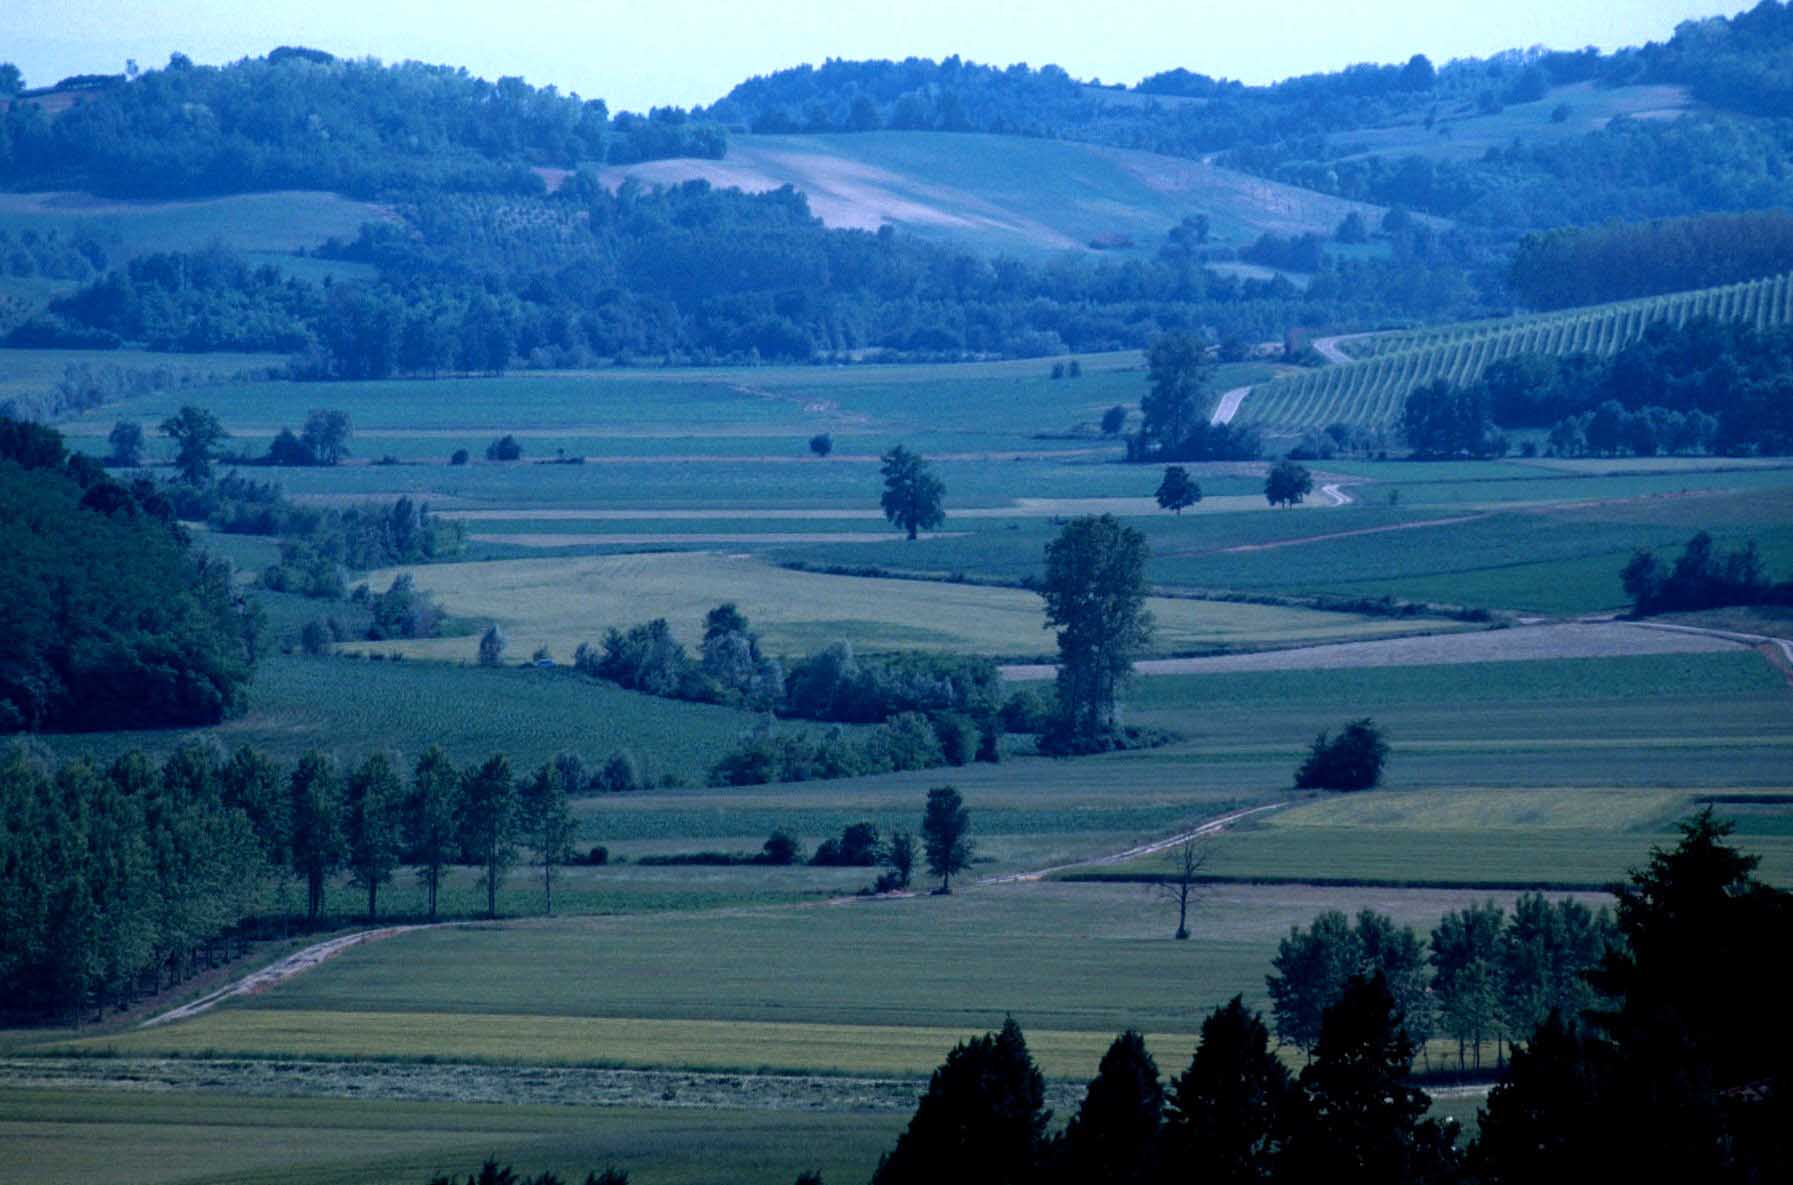 Paesaggio agrario del Monferrato